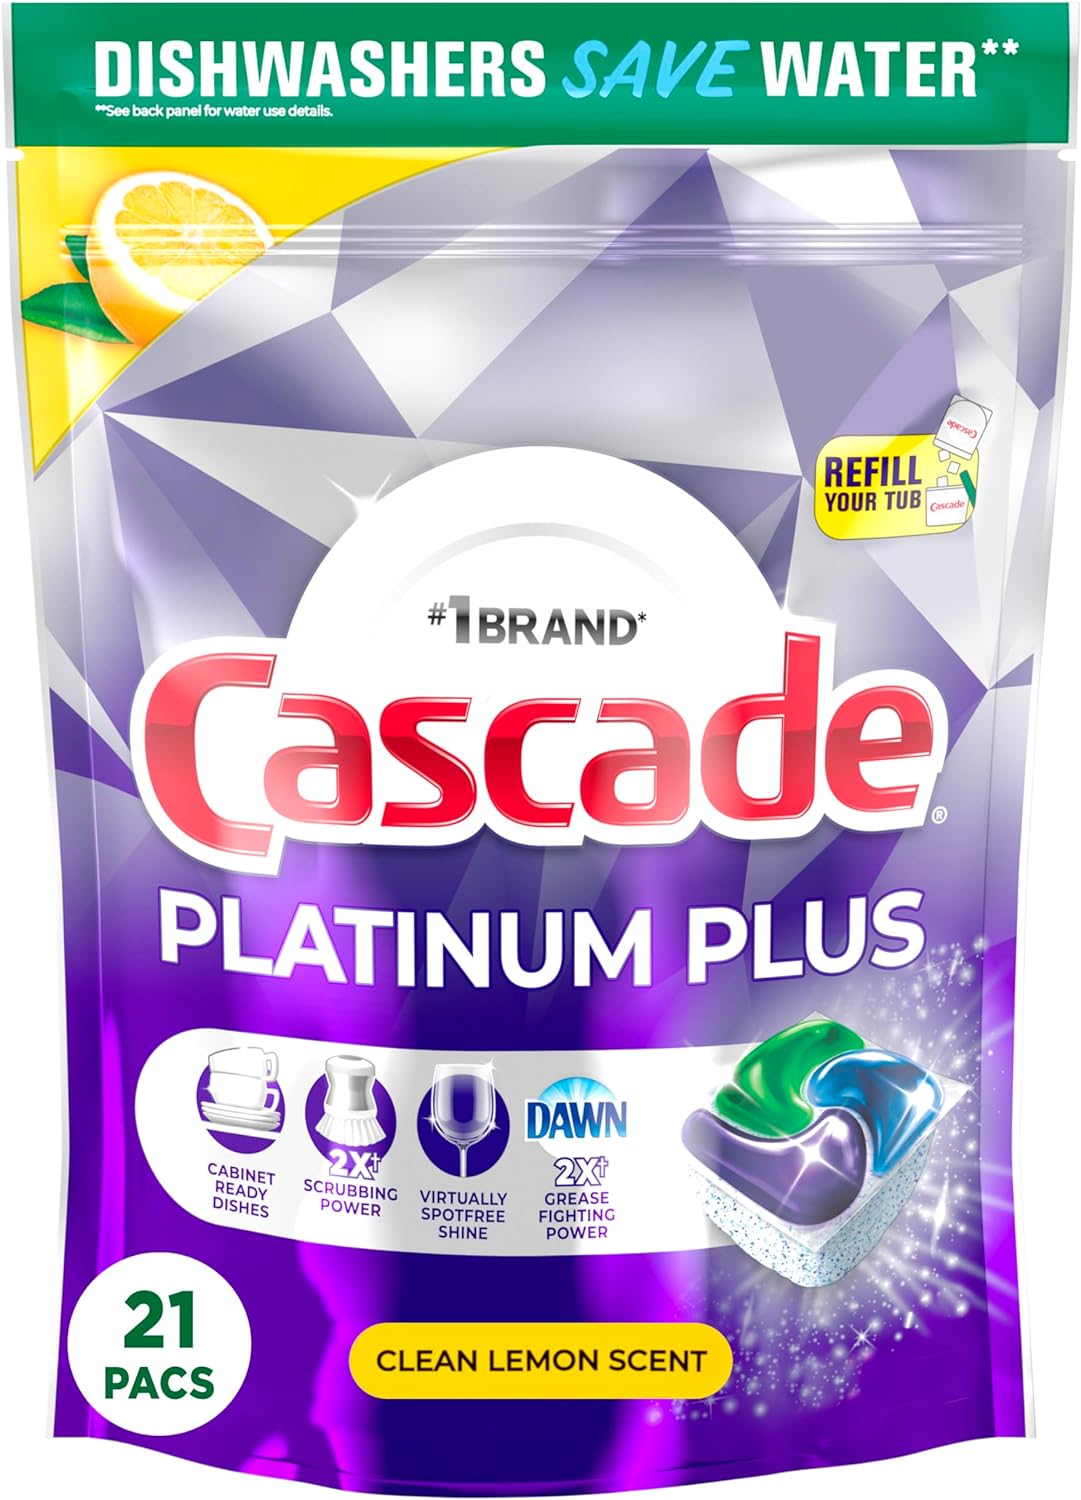 Cascade Platinum Plus Dishwasher Pods, Dish Detergent ActionPacs, Clean Lemon, 21 Count